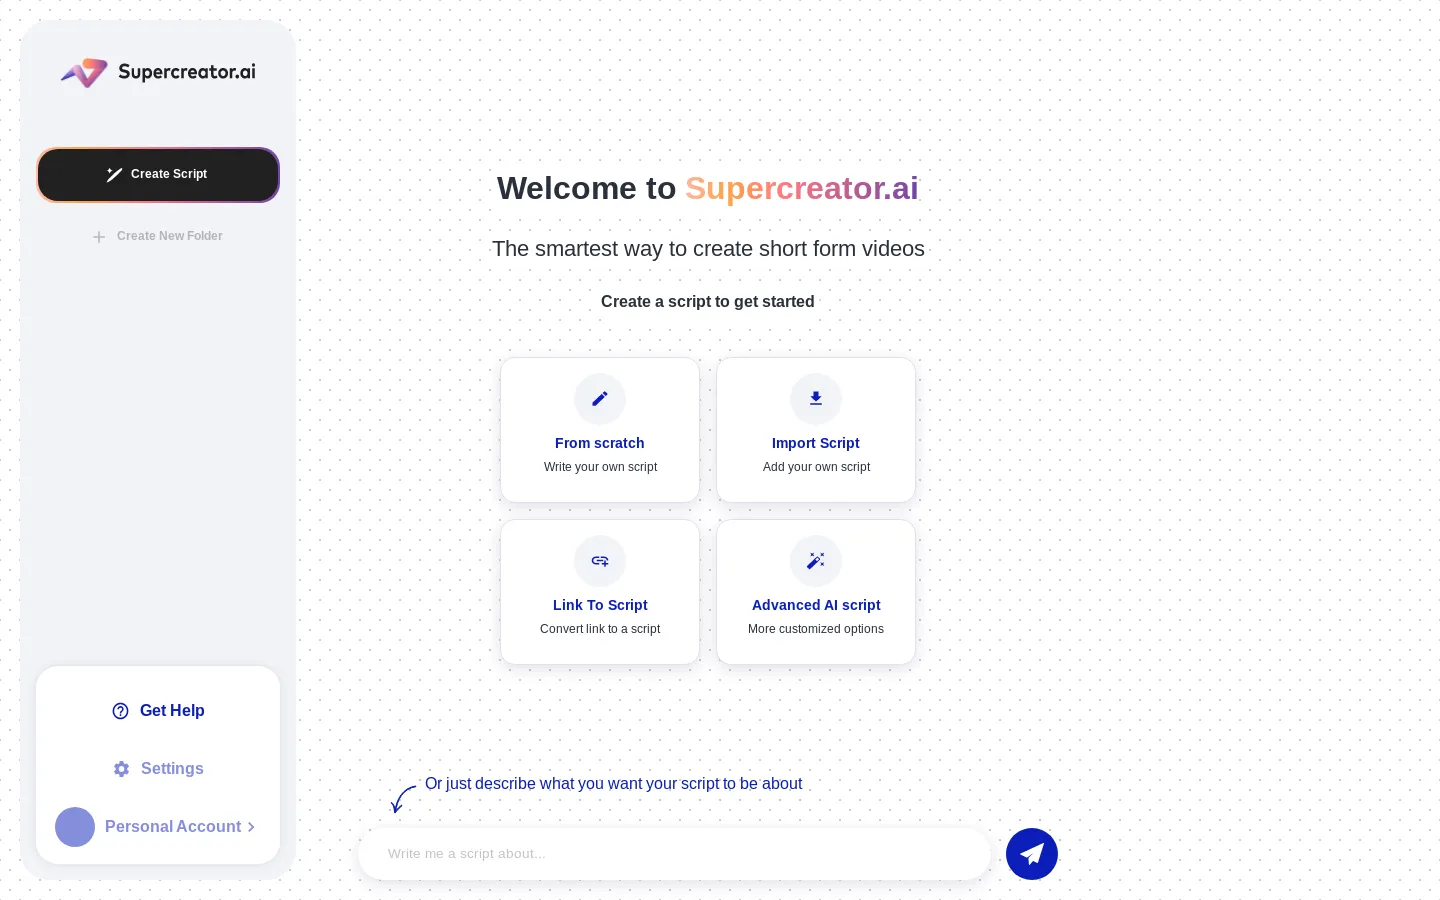 Supercreator.ai - Turn yourself into a digital supercreator